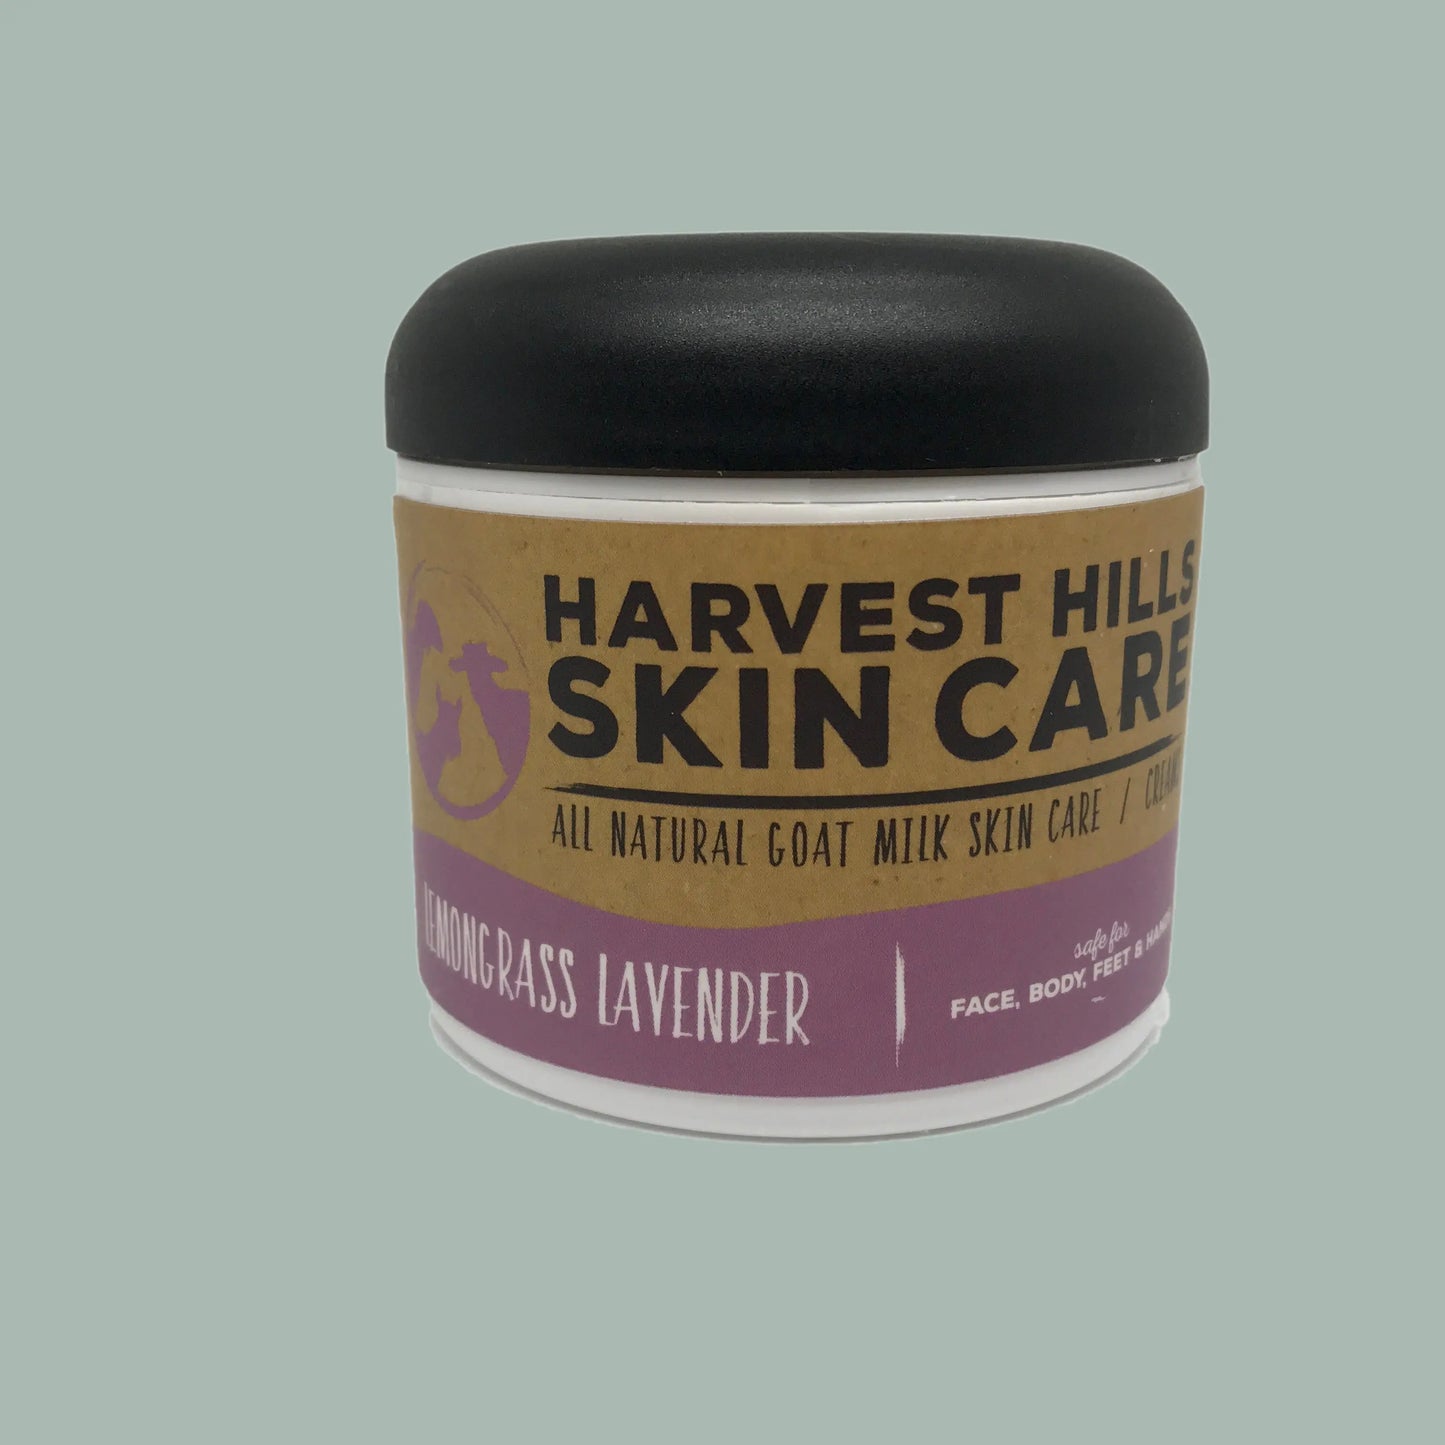 Lemongrass Lavender Intense Moisturizer Harvest Hills Skin Care All Natural Goat Milk Skin Care